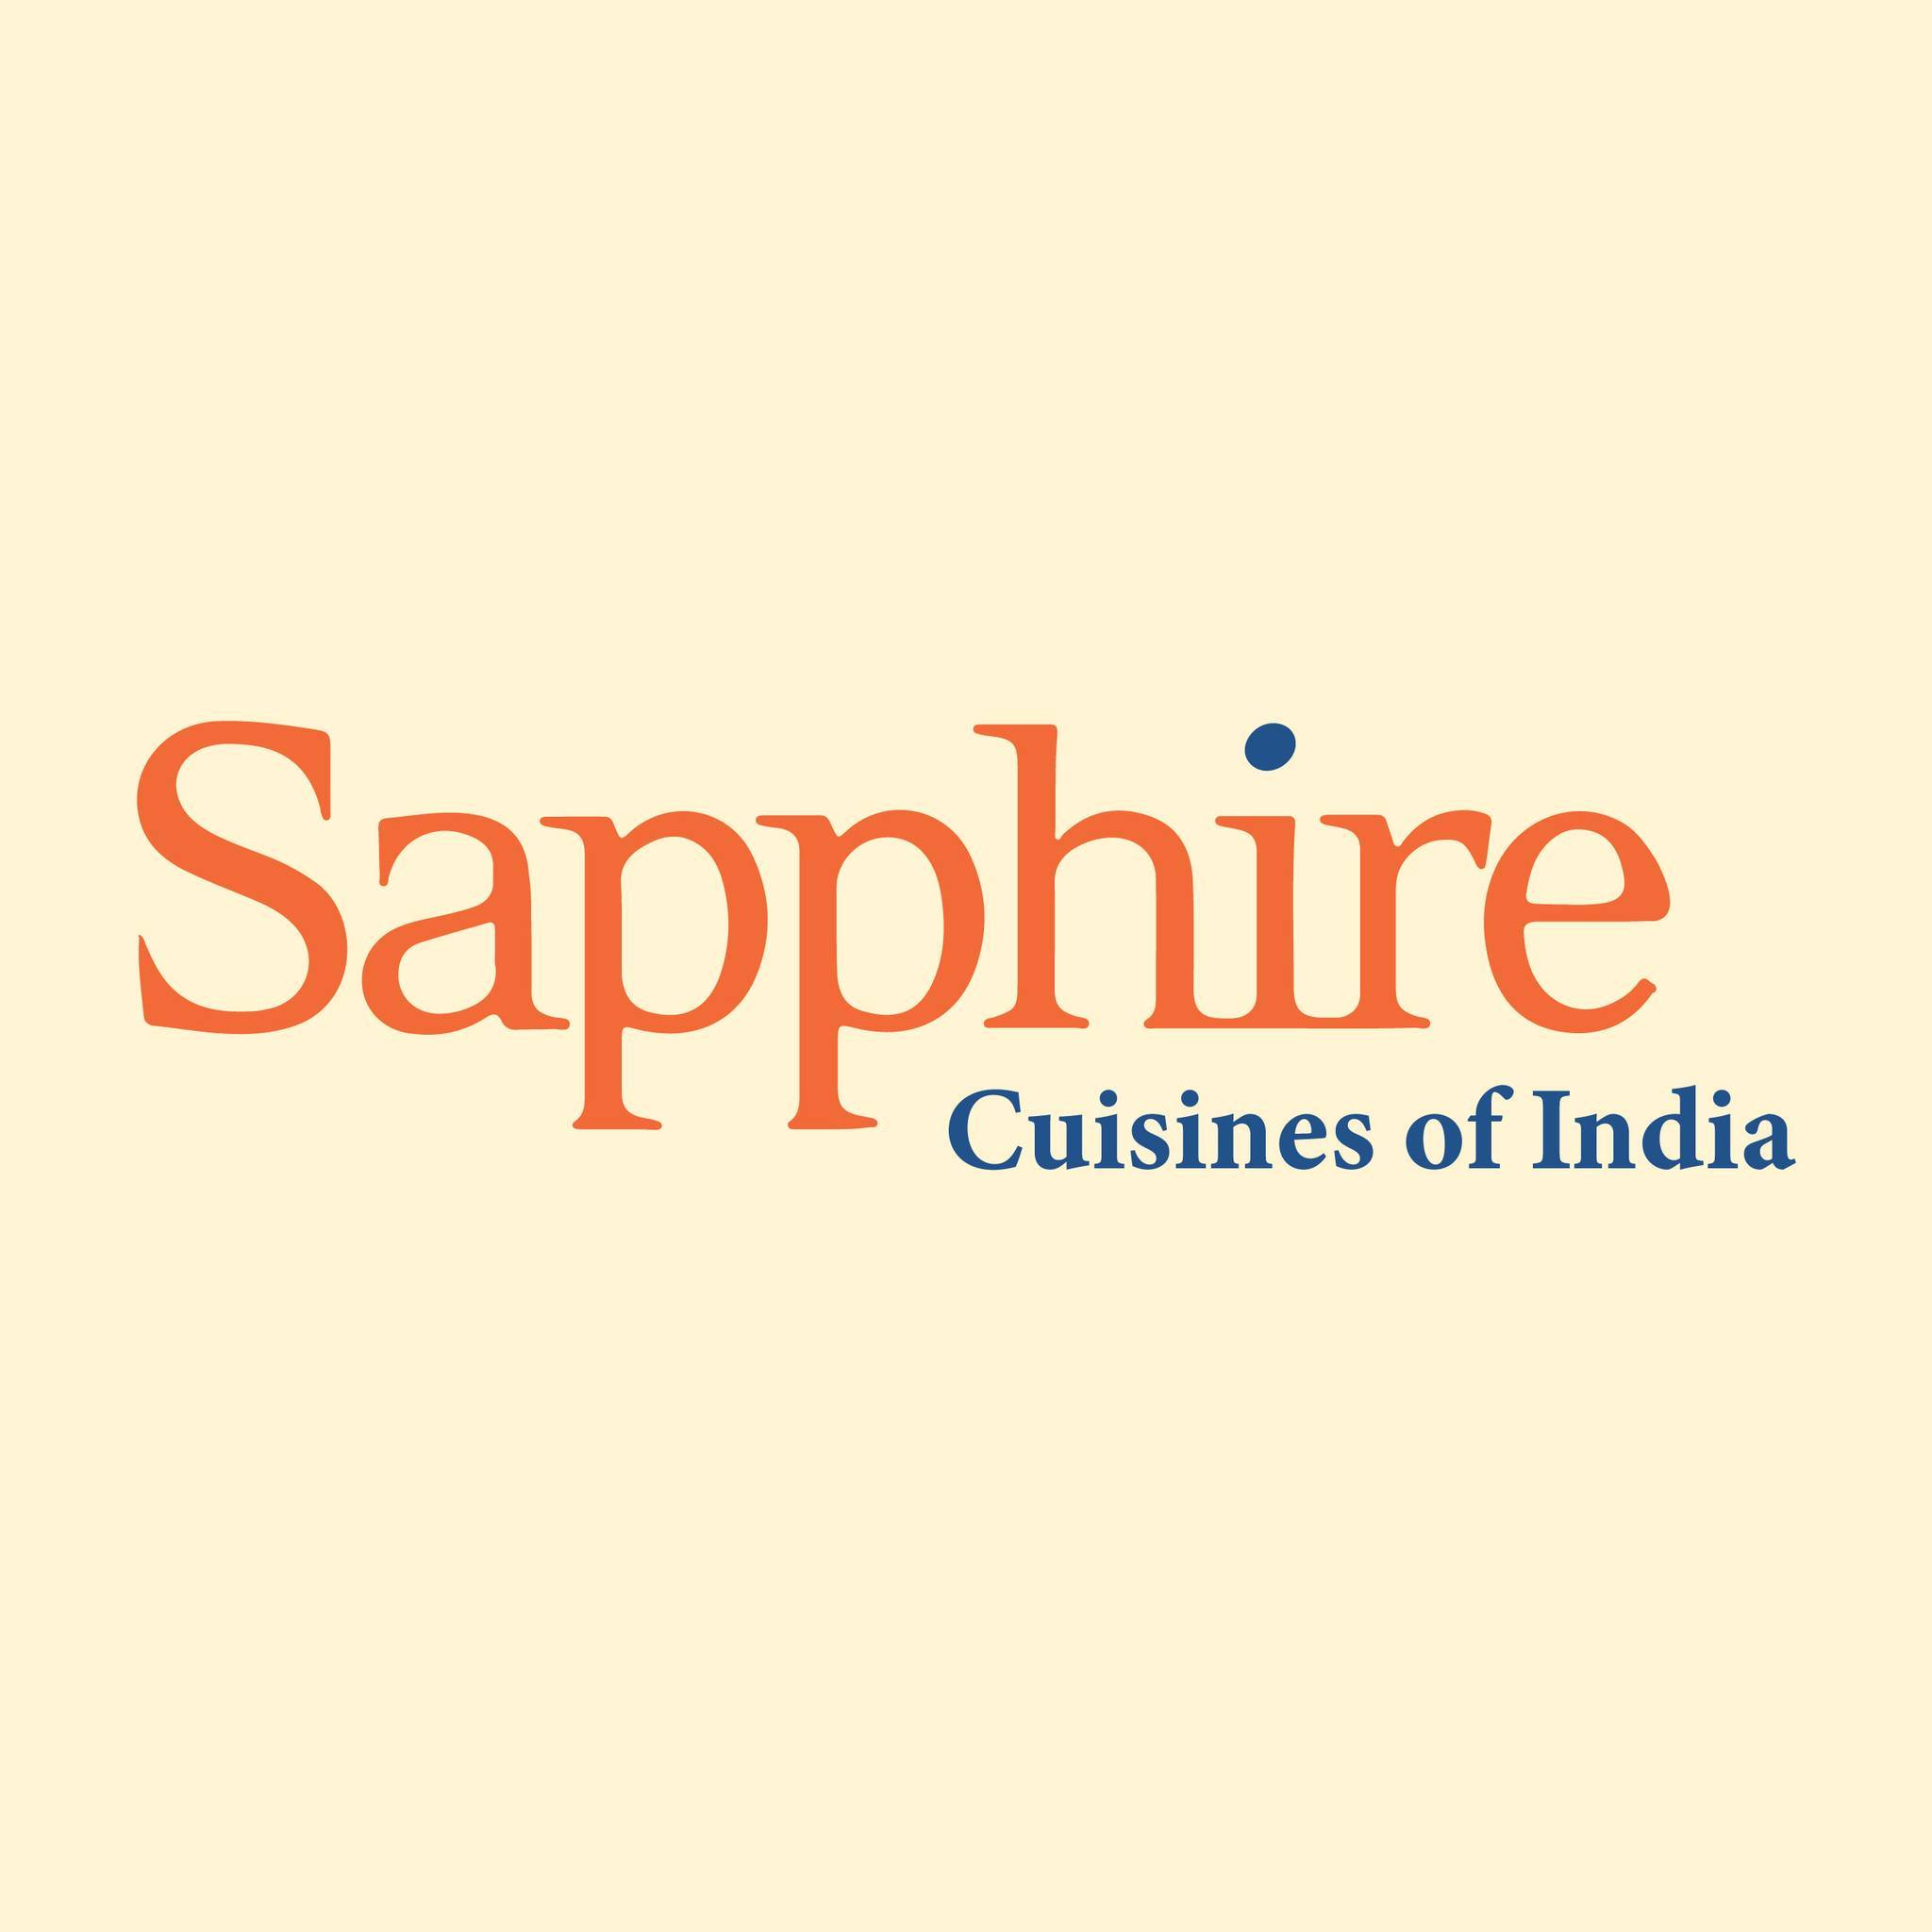 Sapphire Cuisines of India